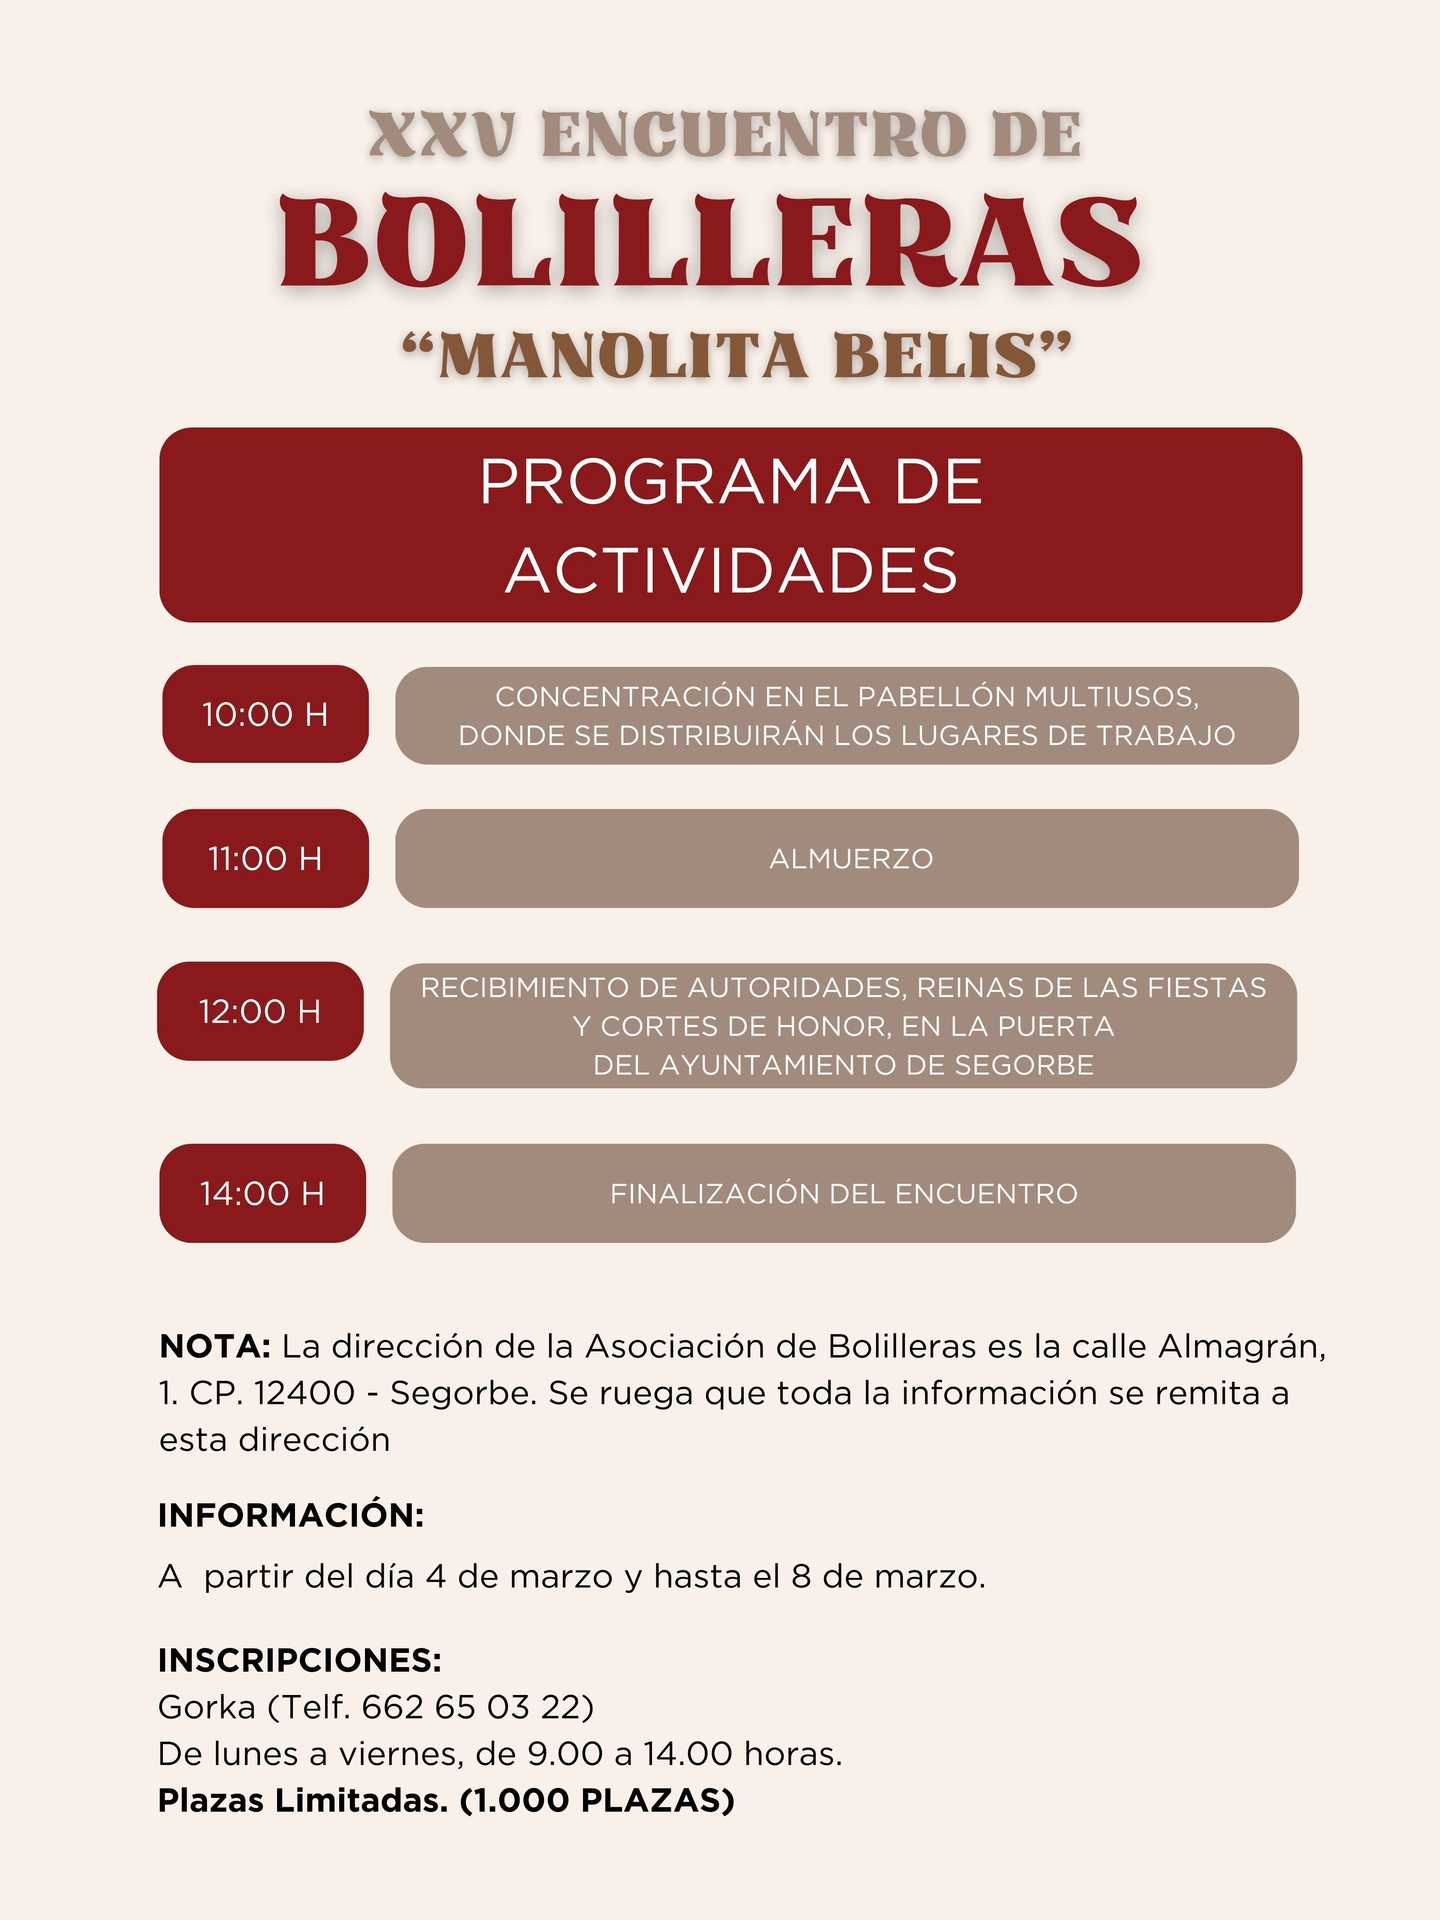 XXV ENCUENTRO DE BOLILLERAS 